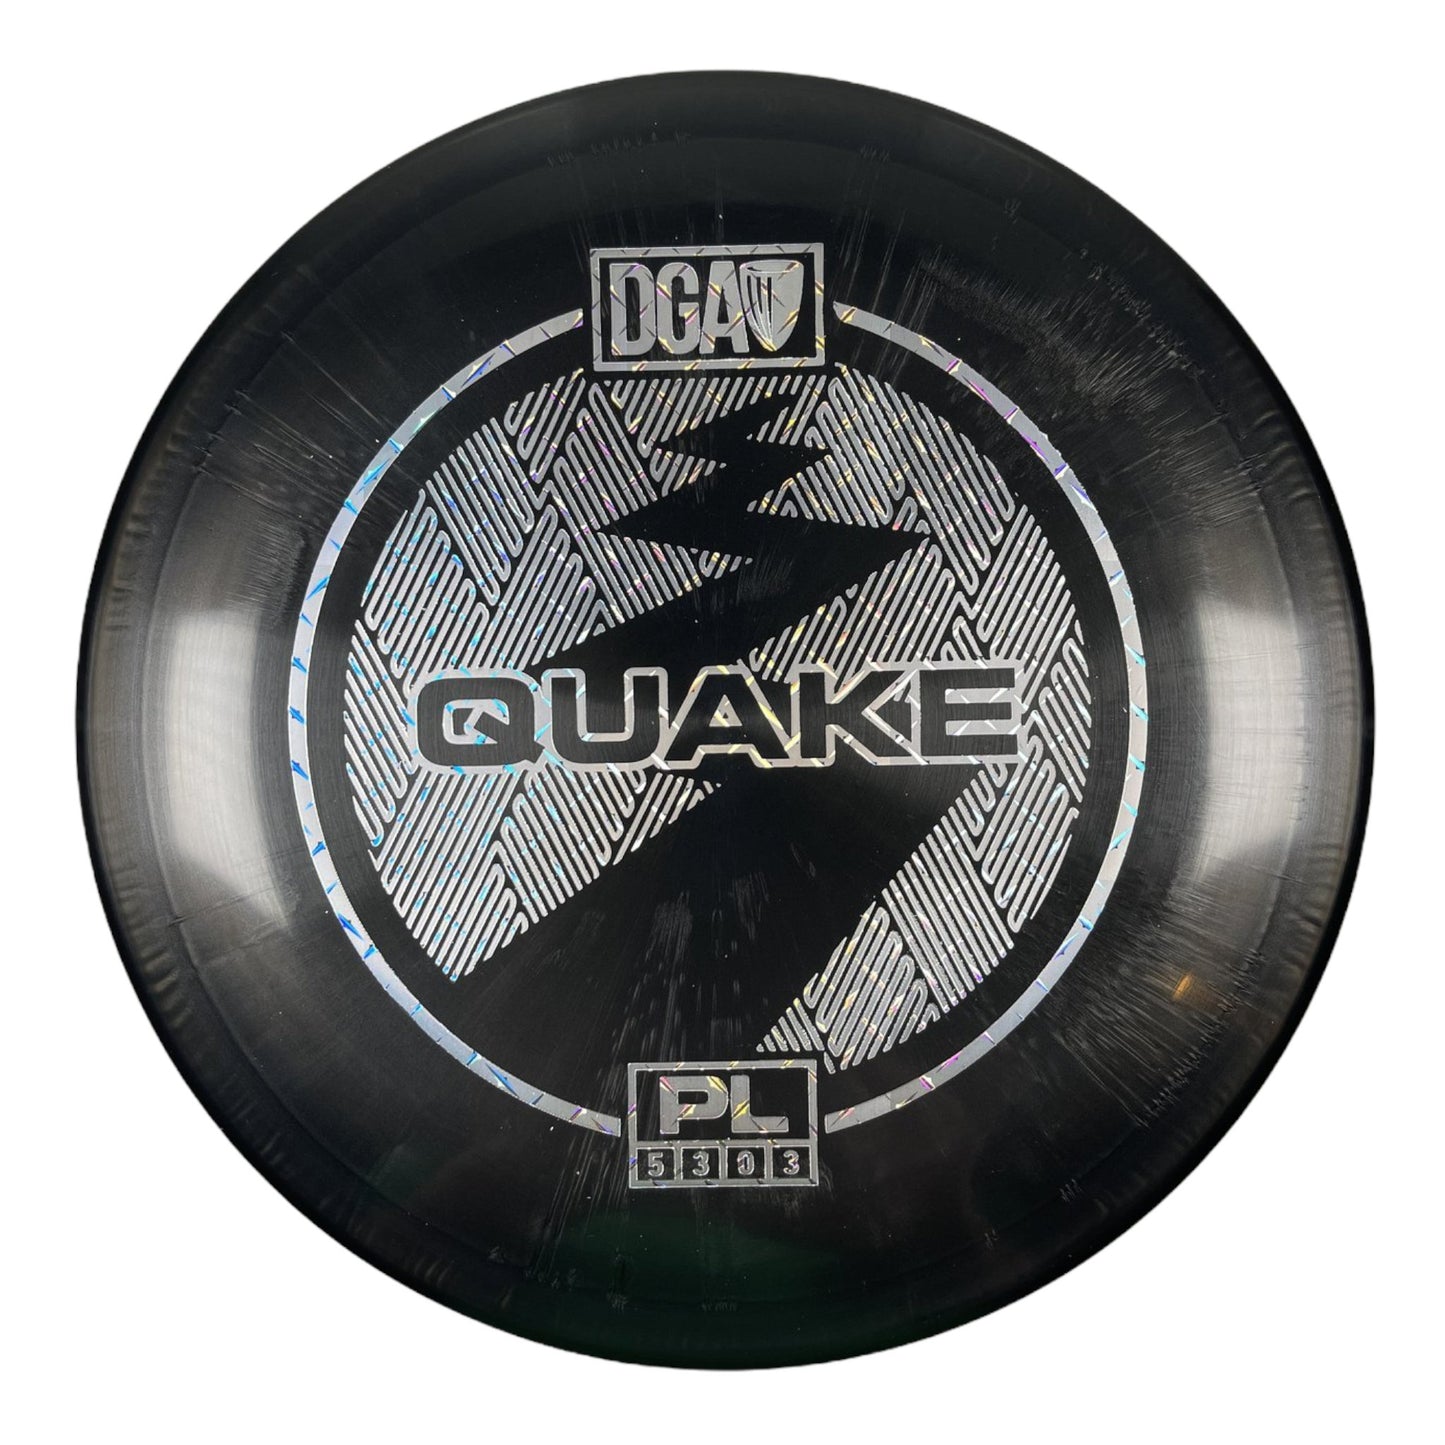 DGA Quake | PL | Black/Holo 170g Disc Golf